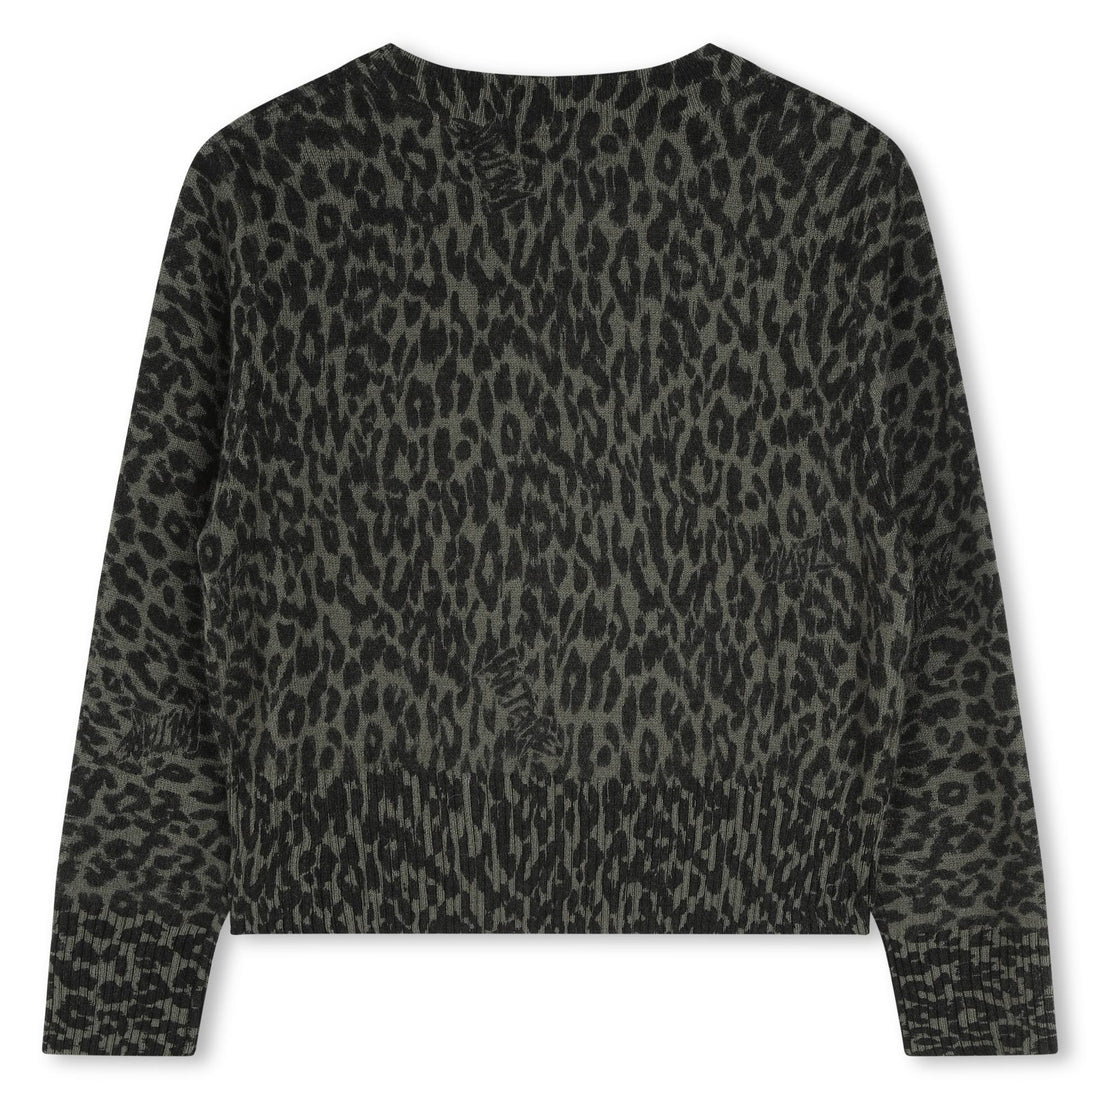 Kinder Leoparden-Jaquard-Pullover